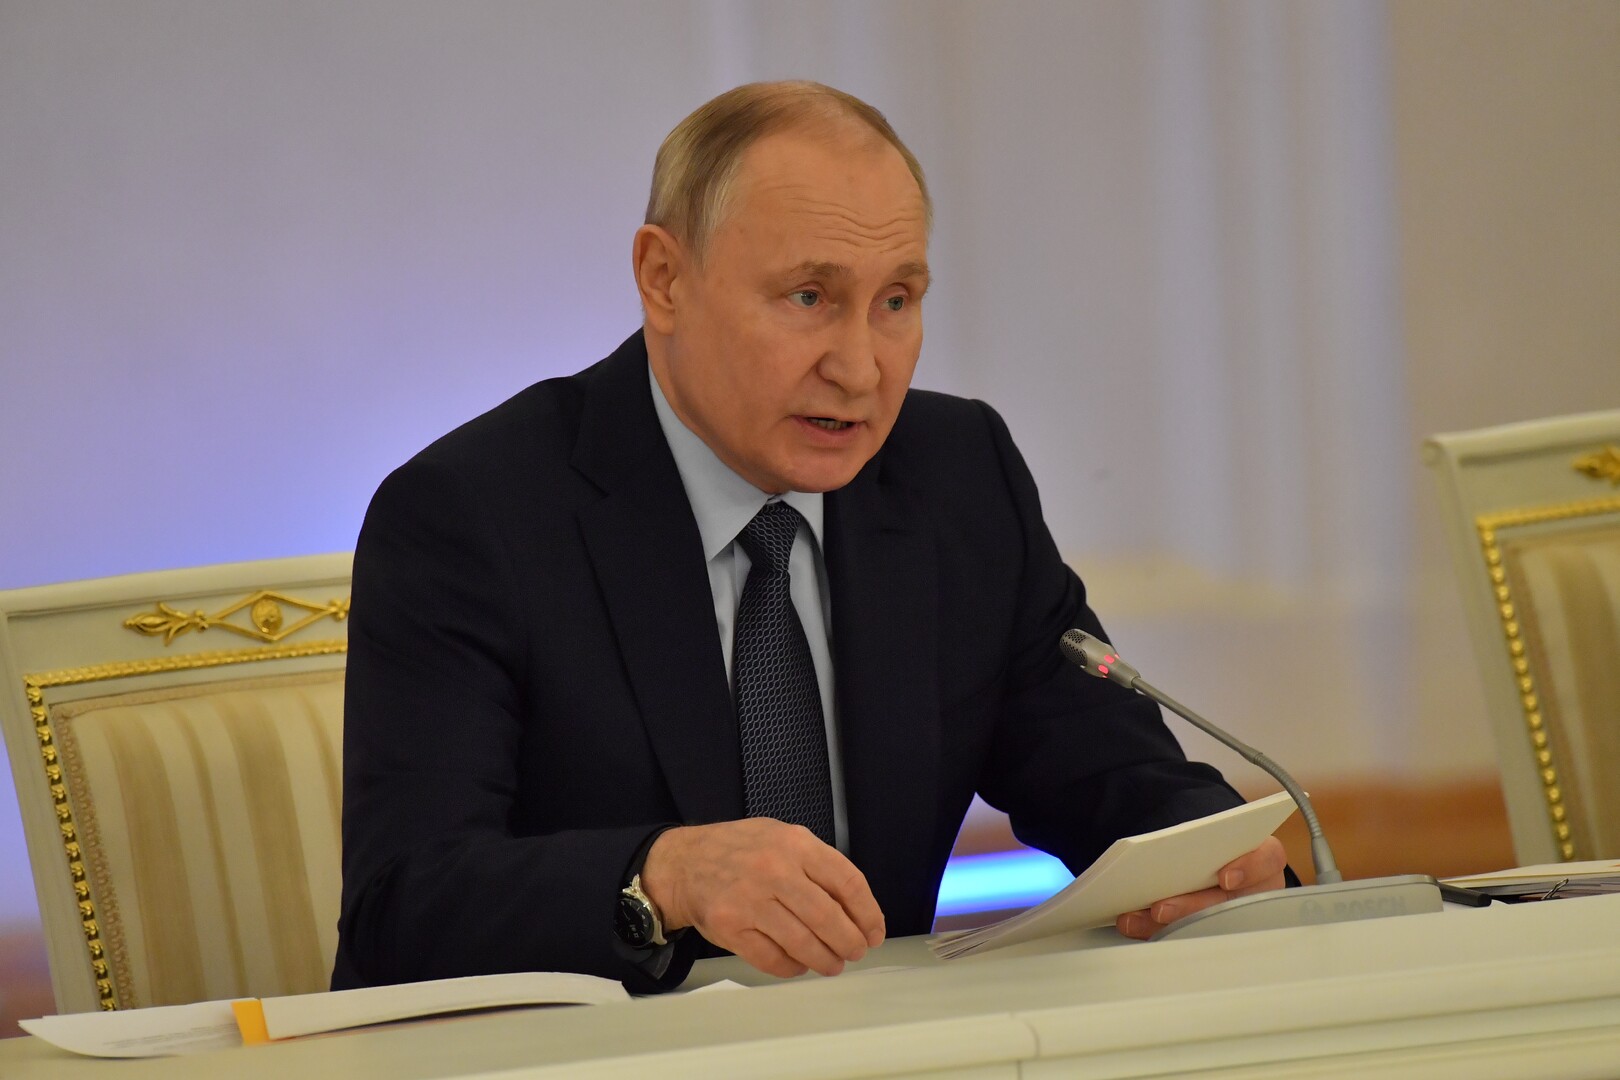 بوتين: لولا رفض أوكرانيا المفاوضات لانتهى كل شيء منذ سنة ونصف